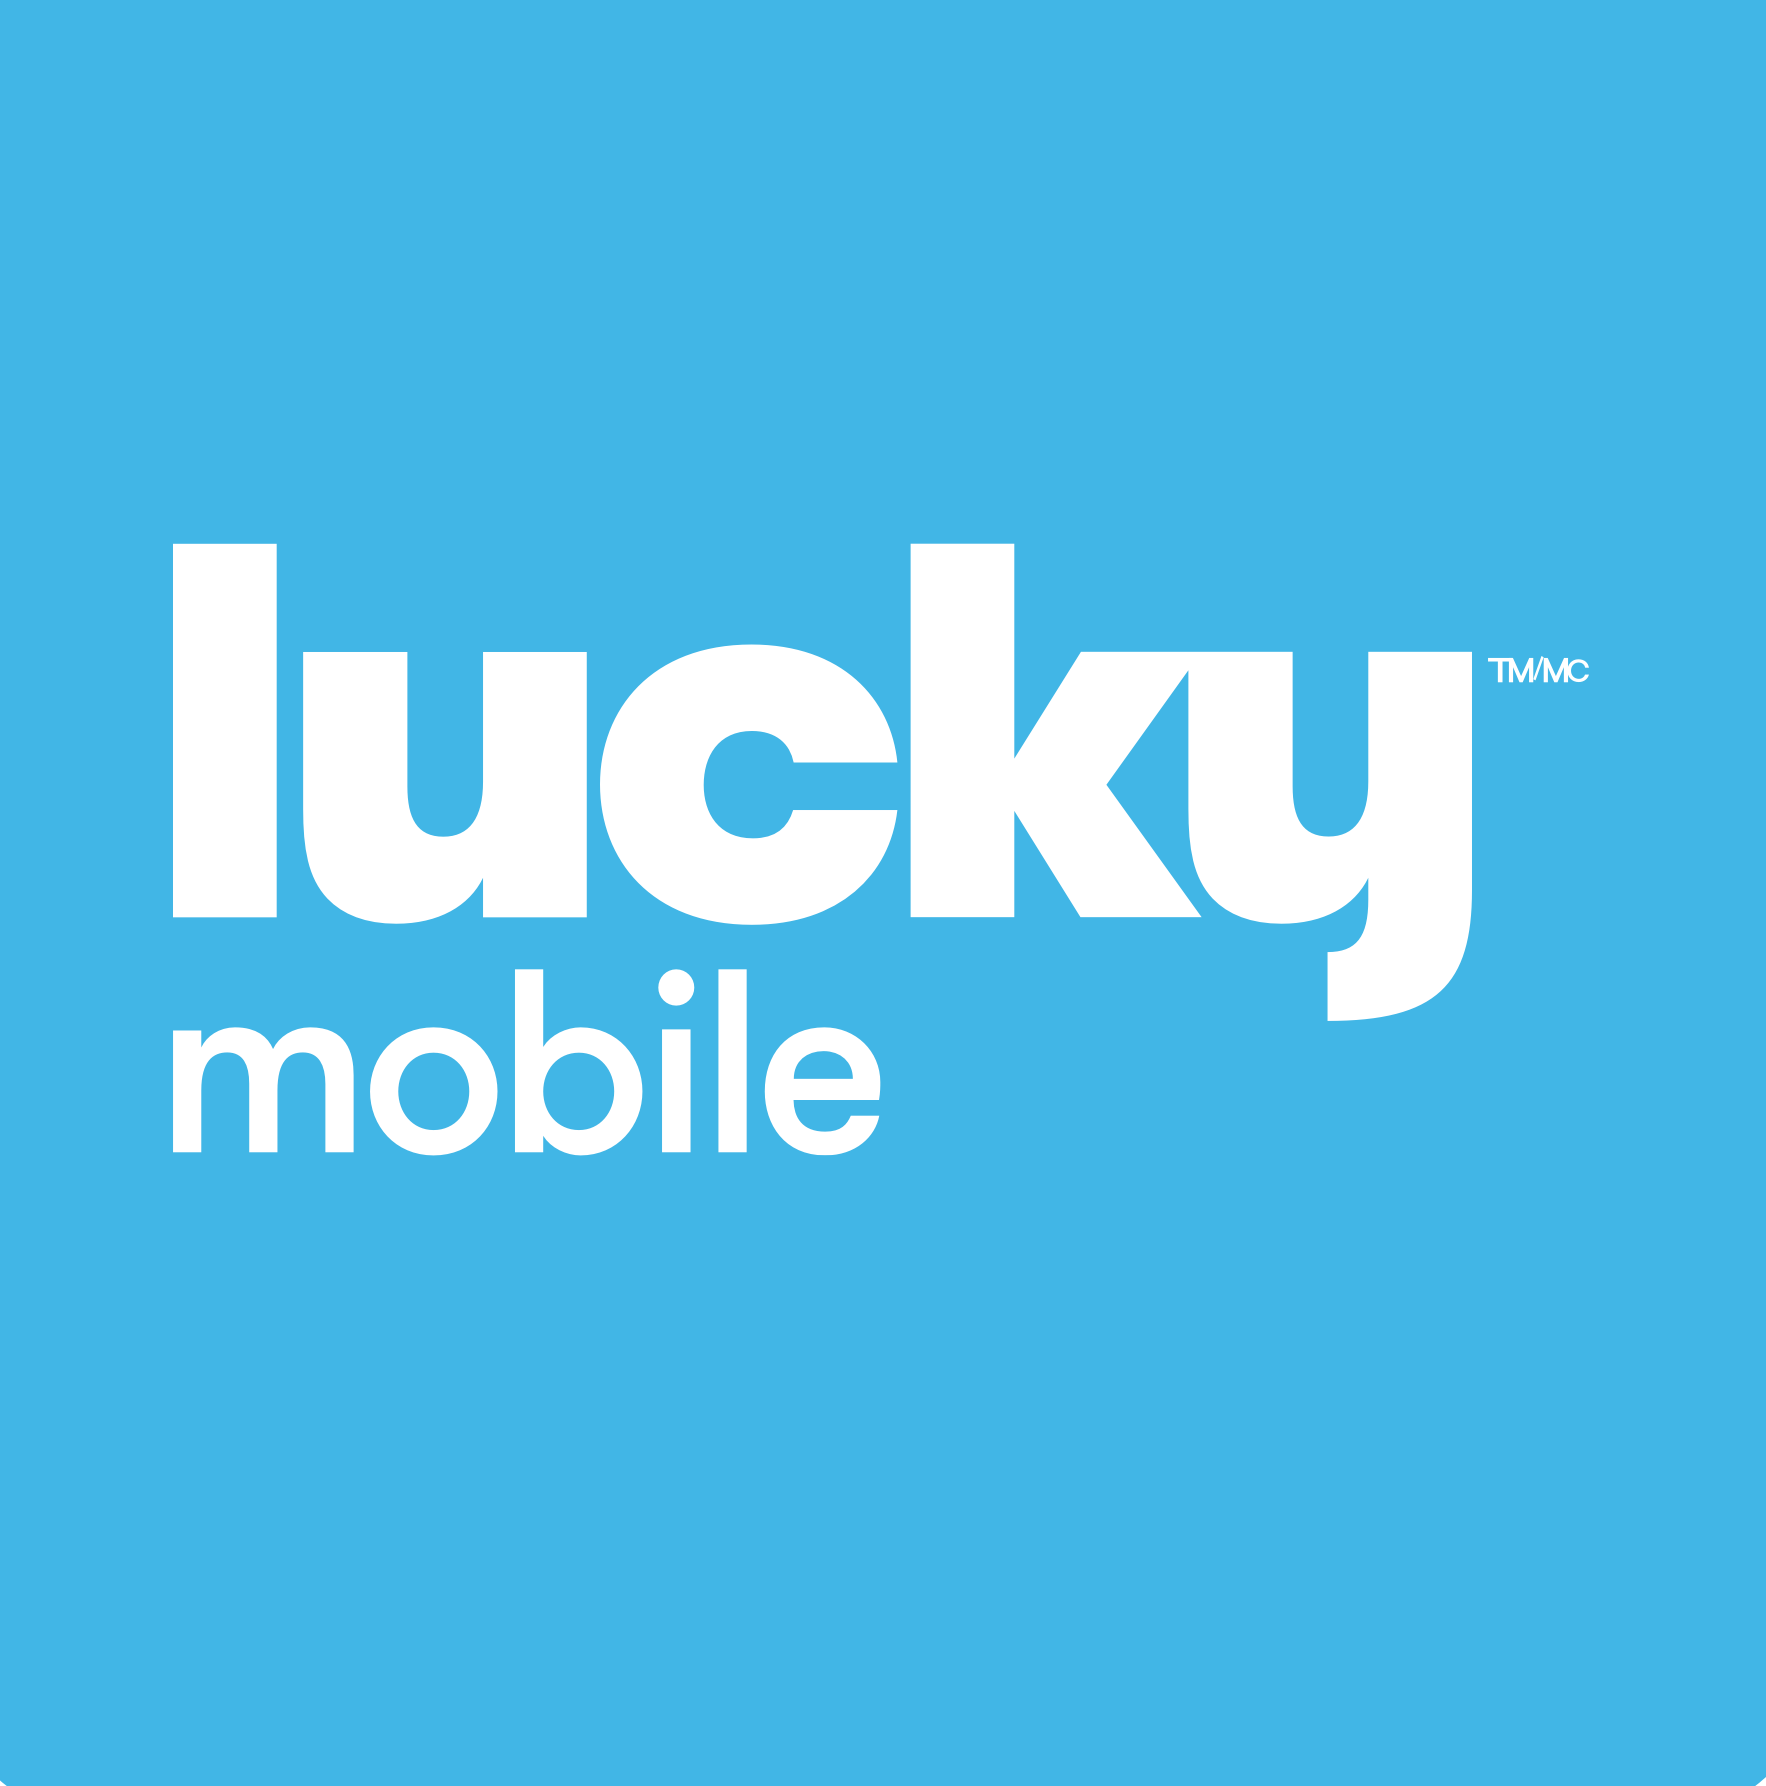 Lucky Mobile logo